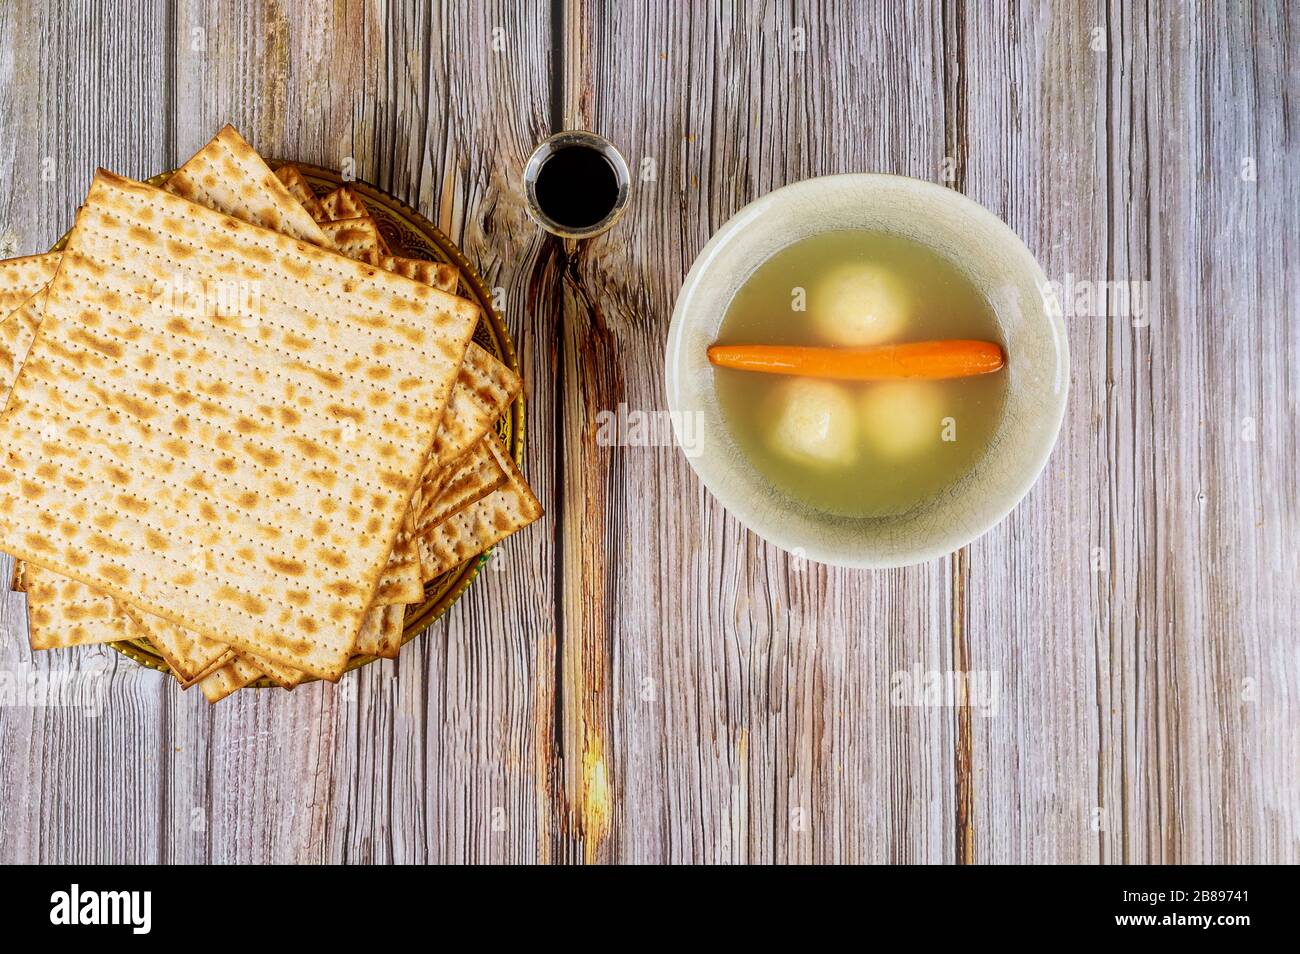 Maison de vacances pessah pâque symboles juifs boule matzoh délicieux potage avec matsa Banque D'Images